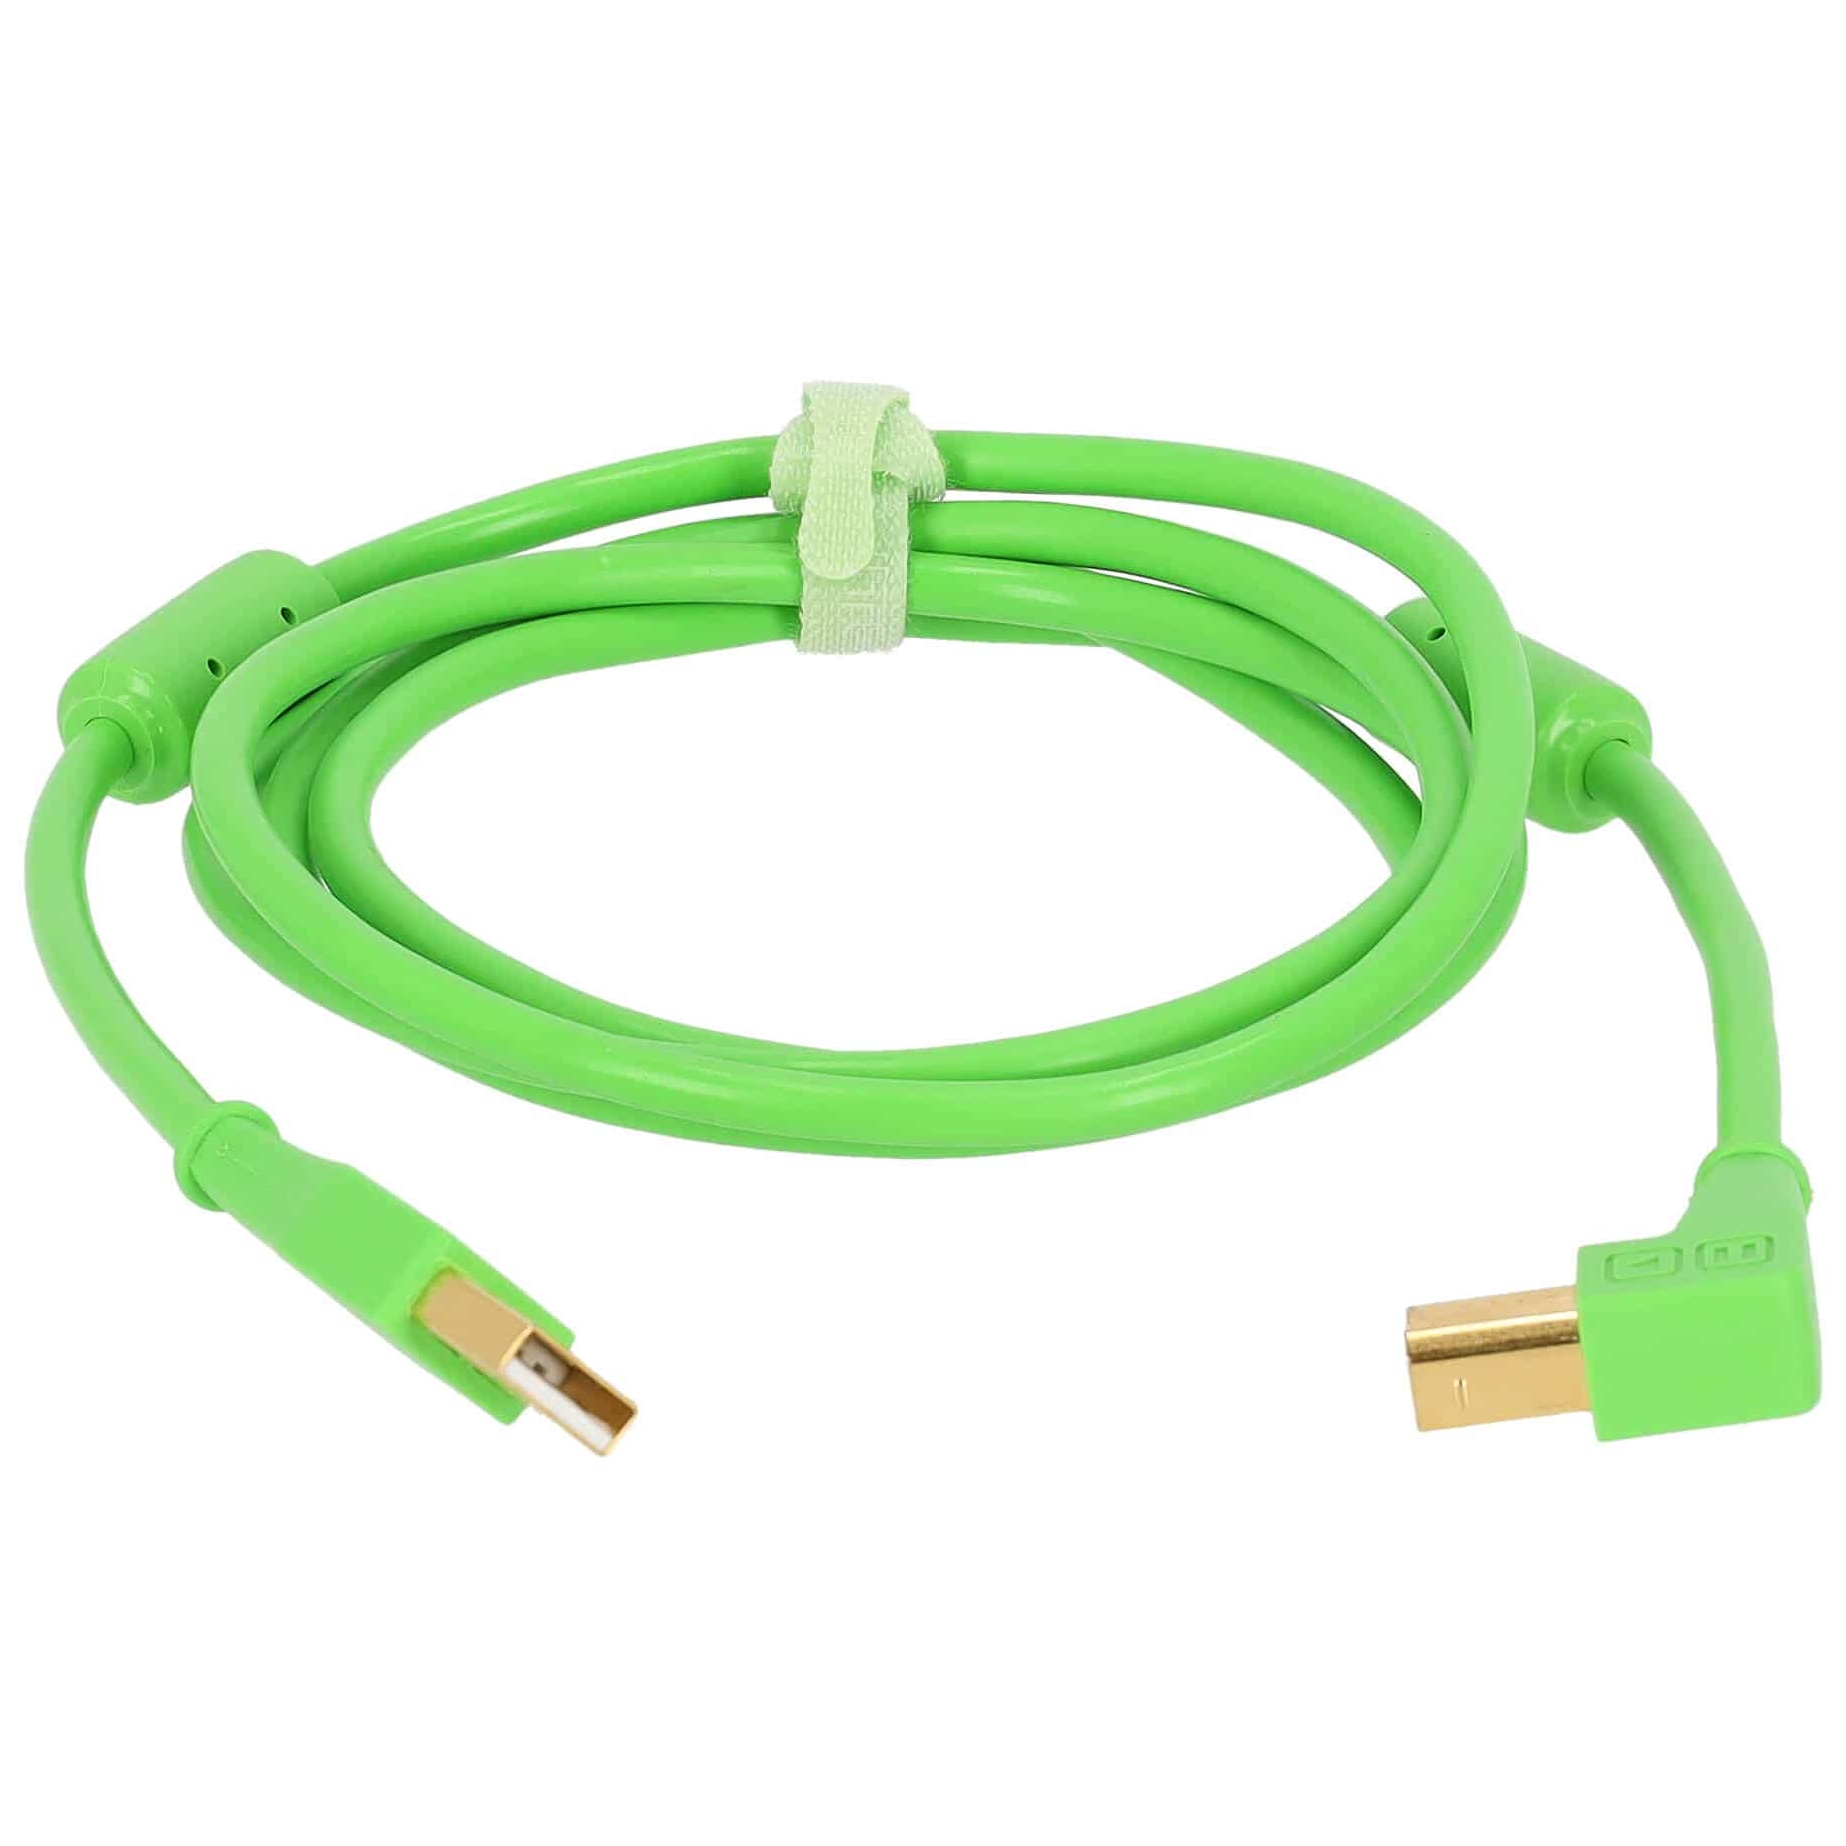 DJ TechTools Chroma Cable Angled Green